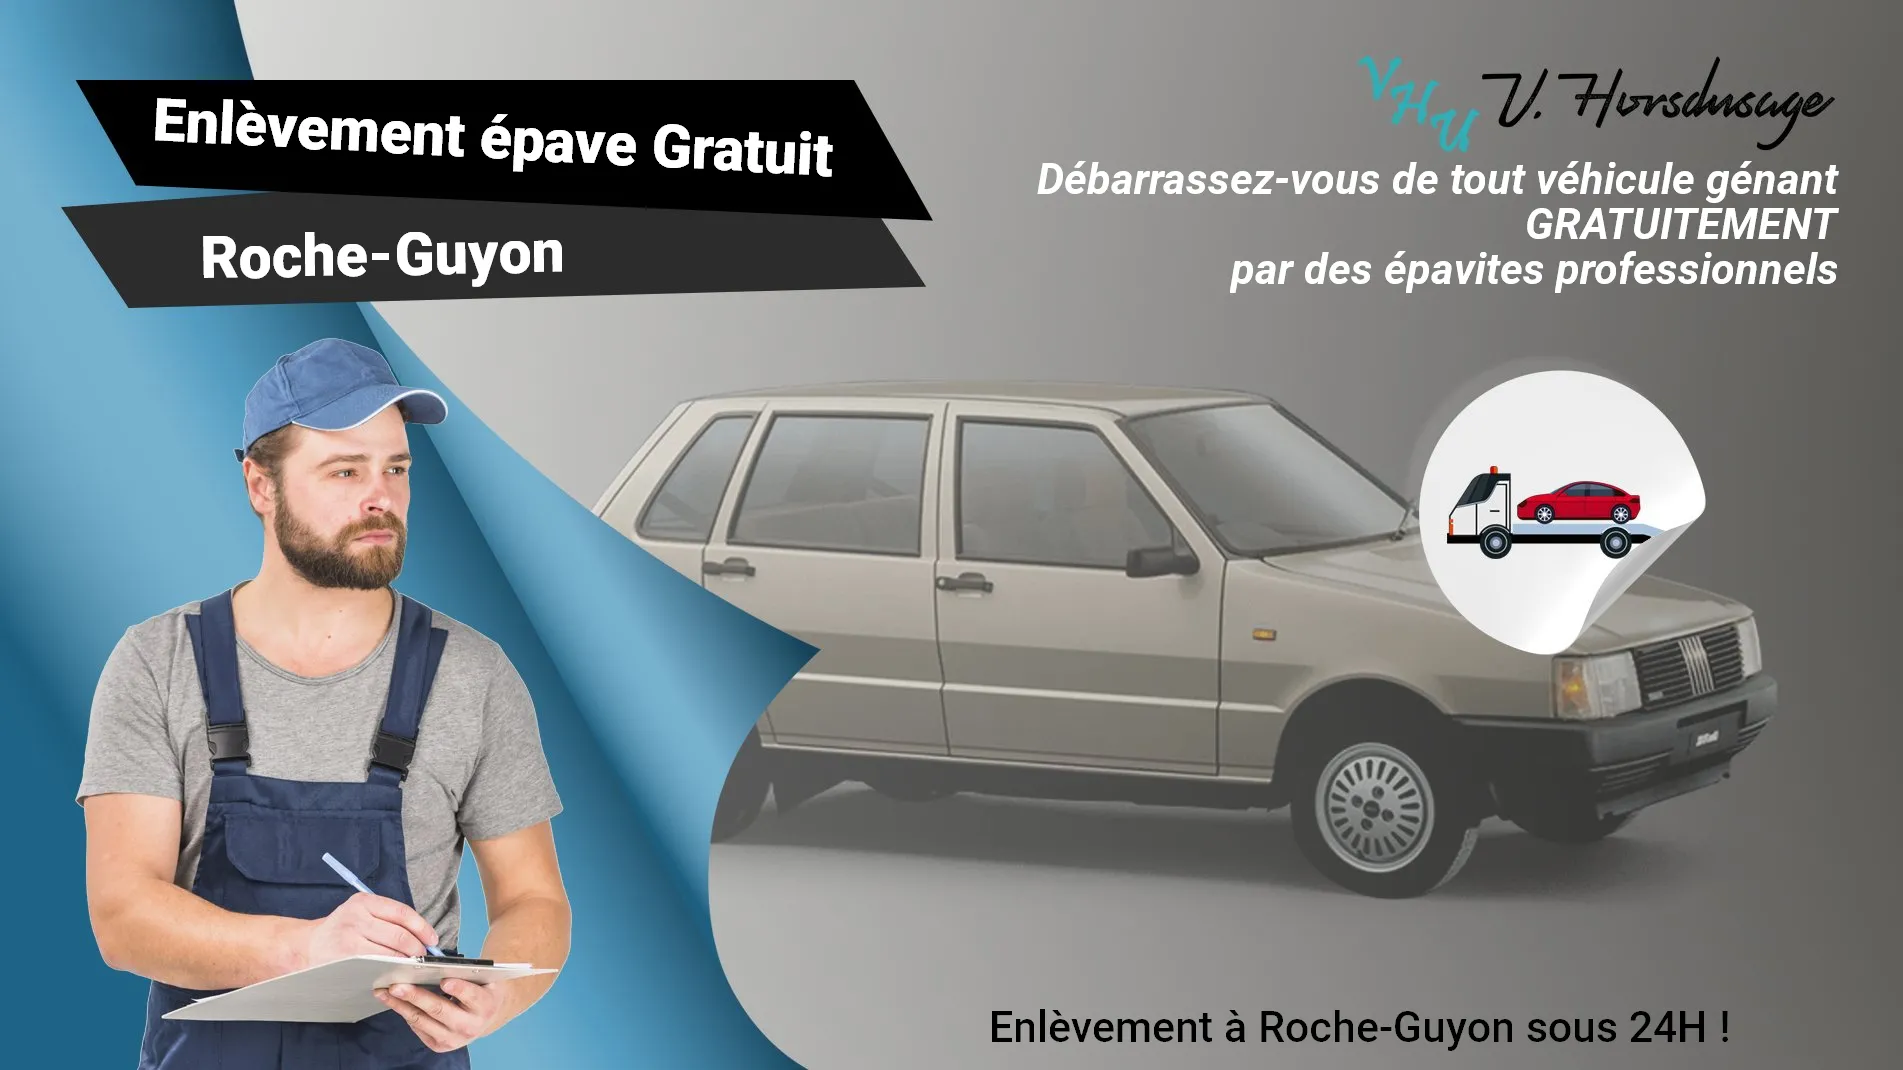 Pour un enlèvement gratuit à Roche-Guyon, contactez nos épavistes agréé VHU